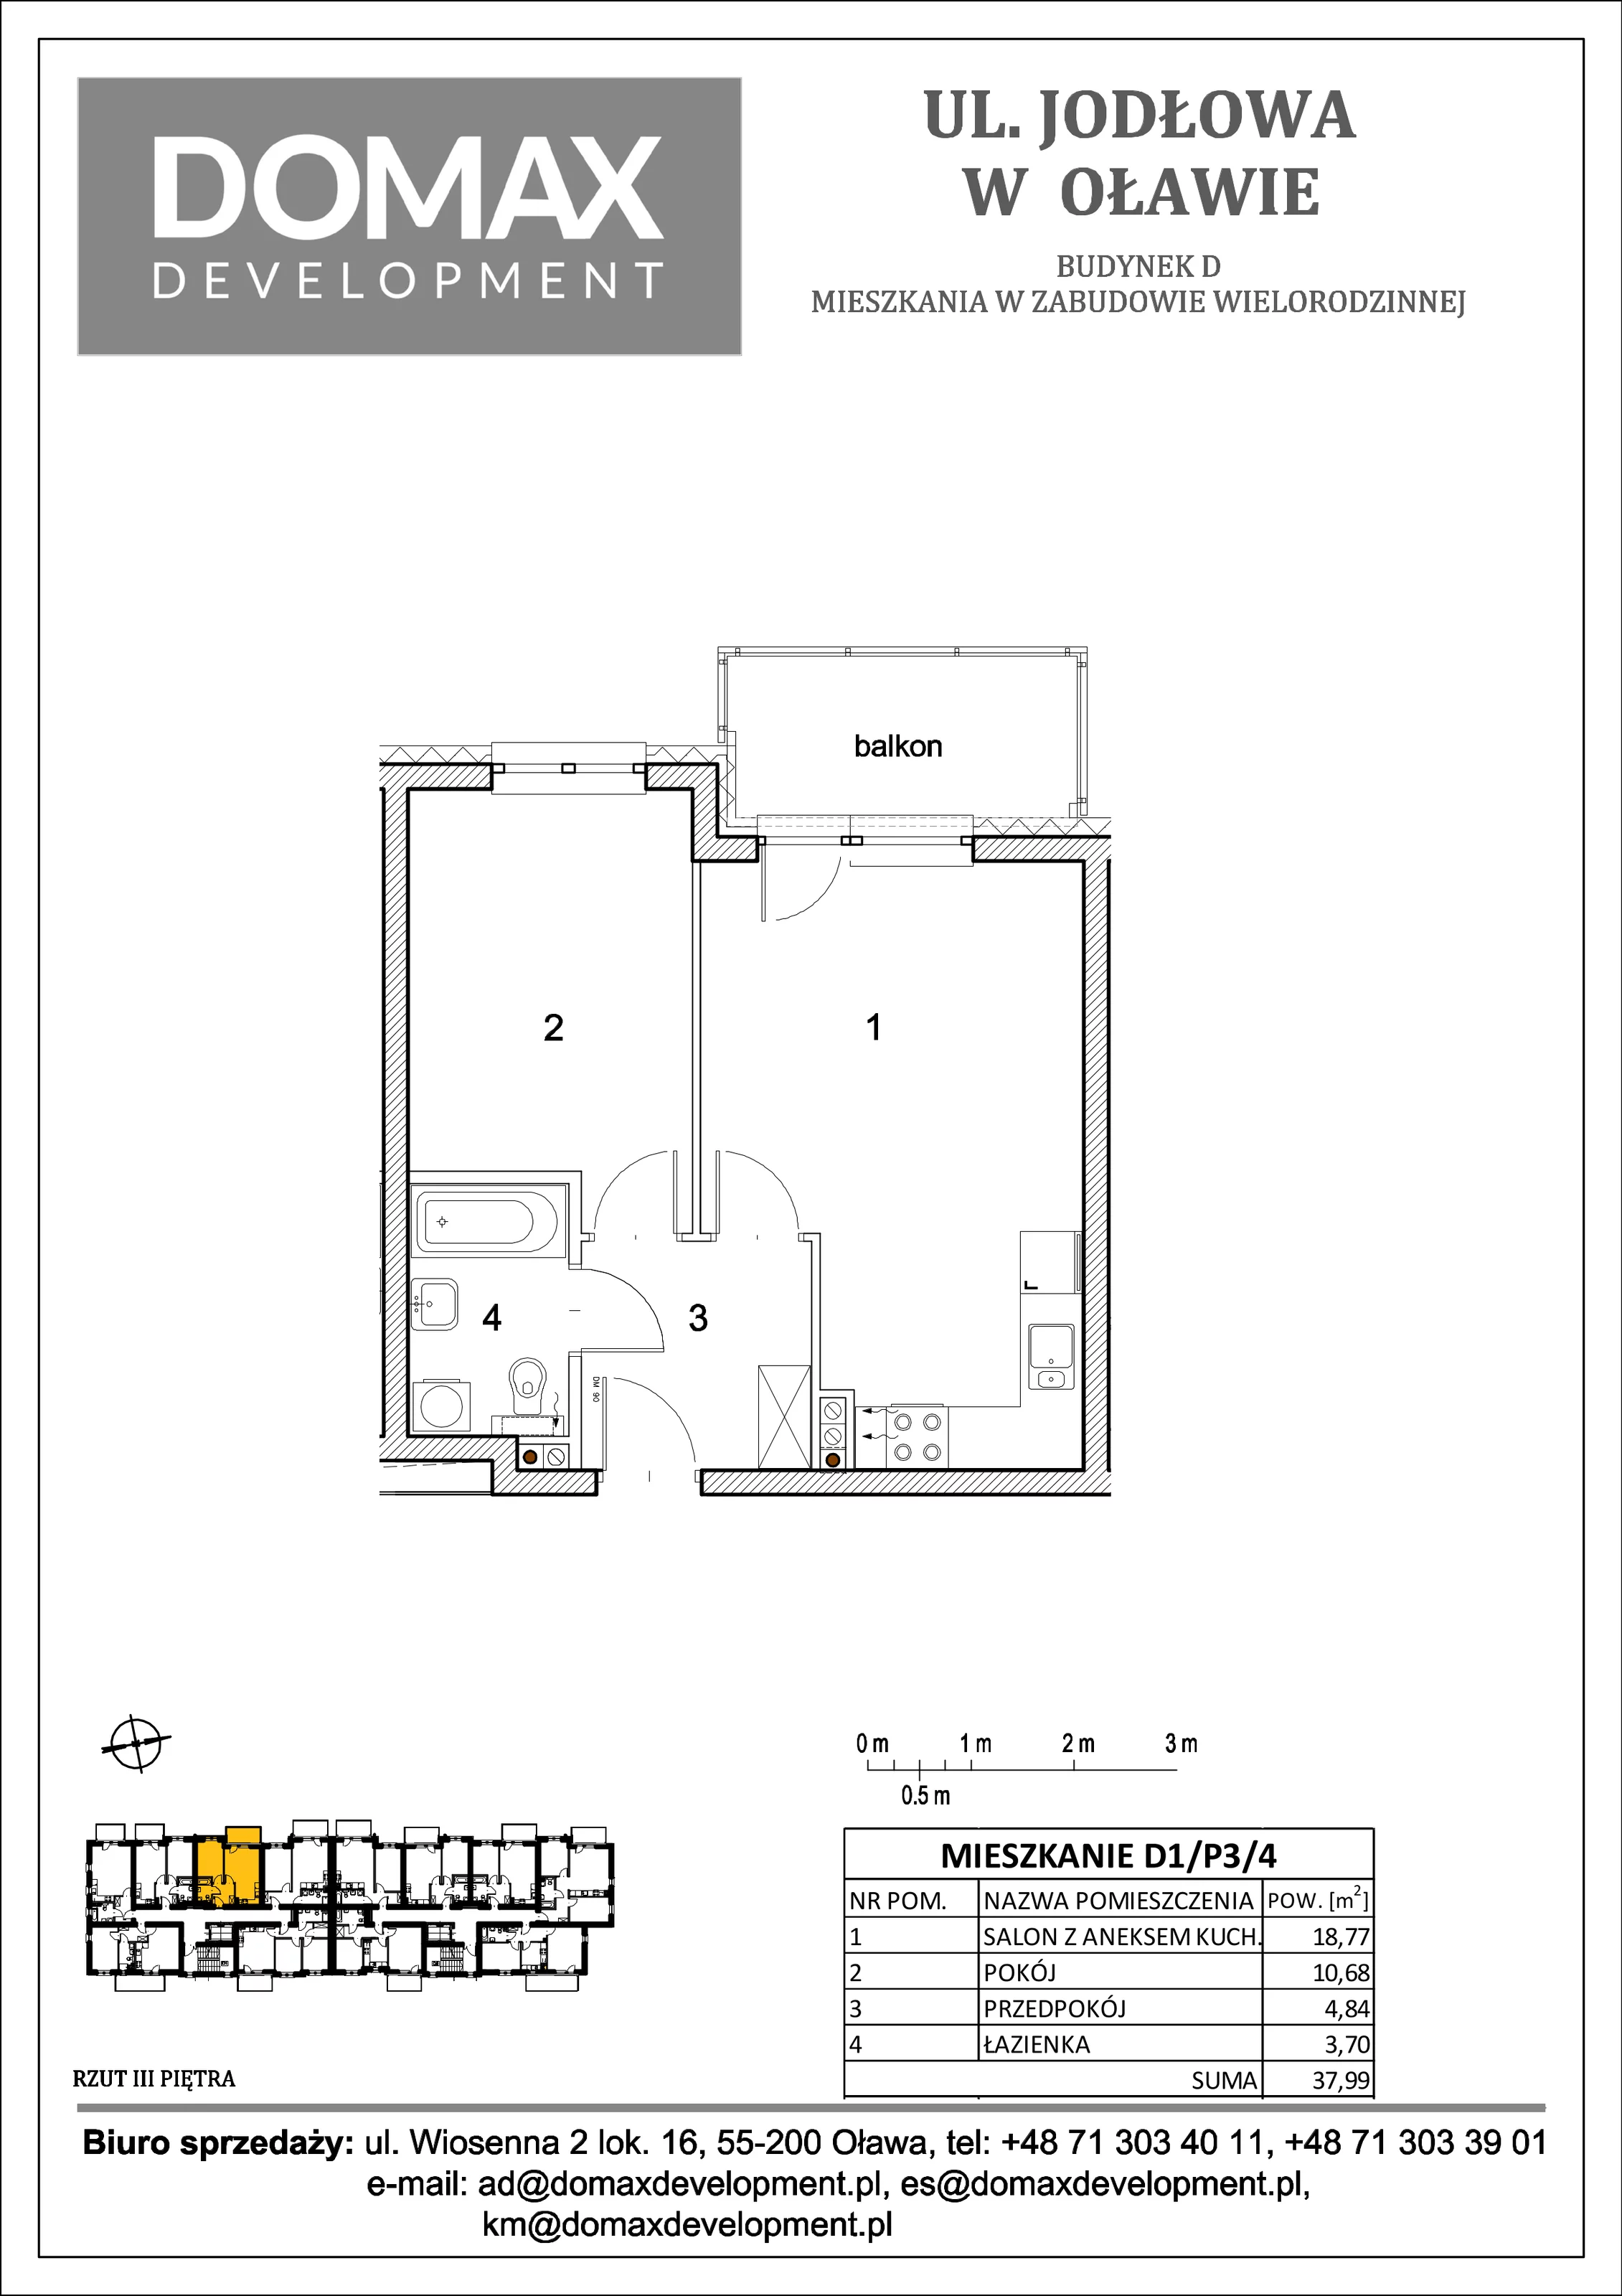 Mieszkanie 37,99 m², piętro 3, oferta nr D1/P3/4, Osiedle Jodłowa etap II, Oława, ul. Jodłowa